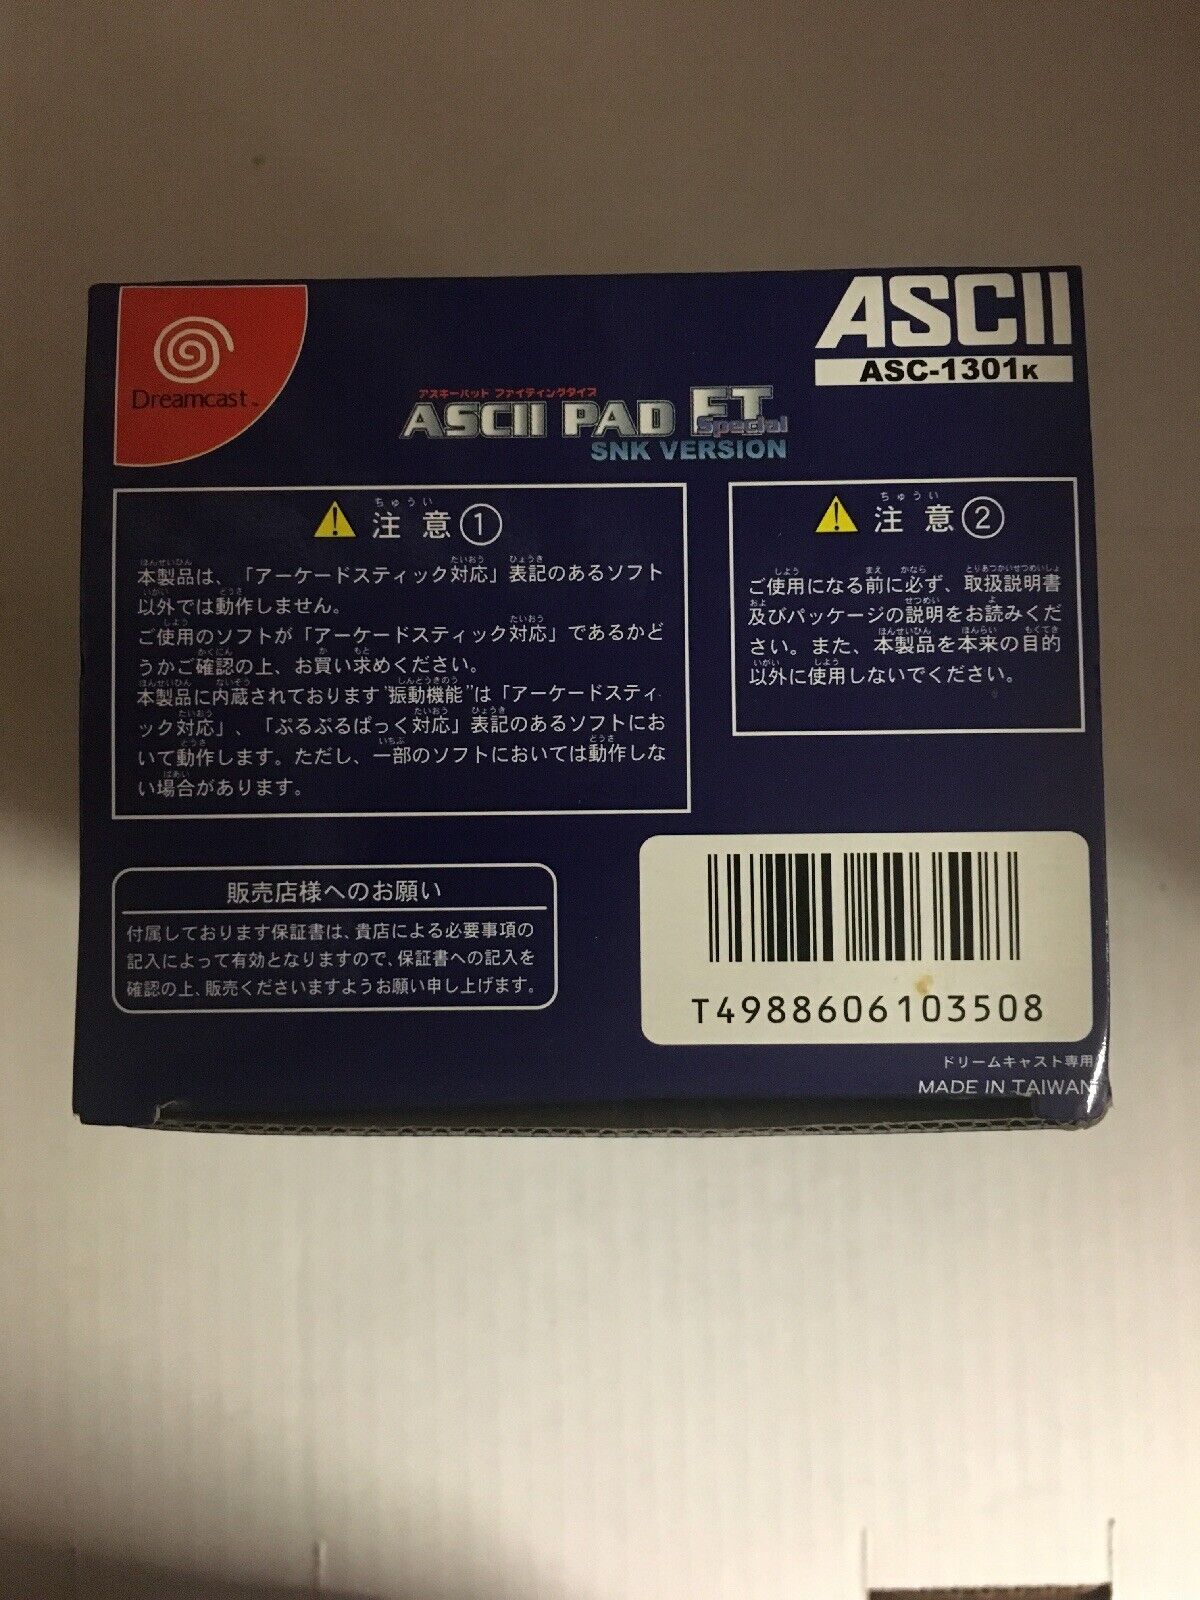 ASCII PAD ET Special SNK VERSION ASC-1301K Dreamcast Capcom vs SNK RARE MINT CIB